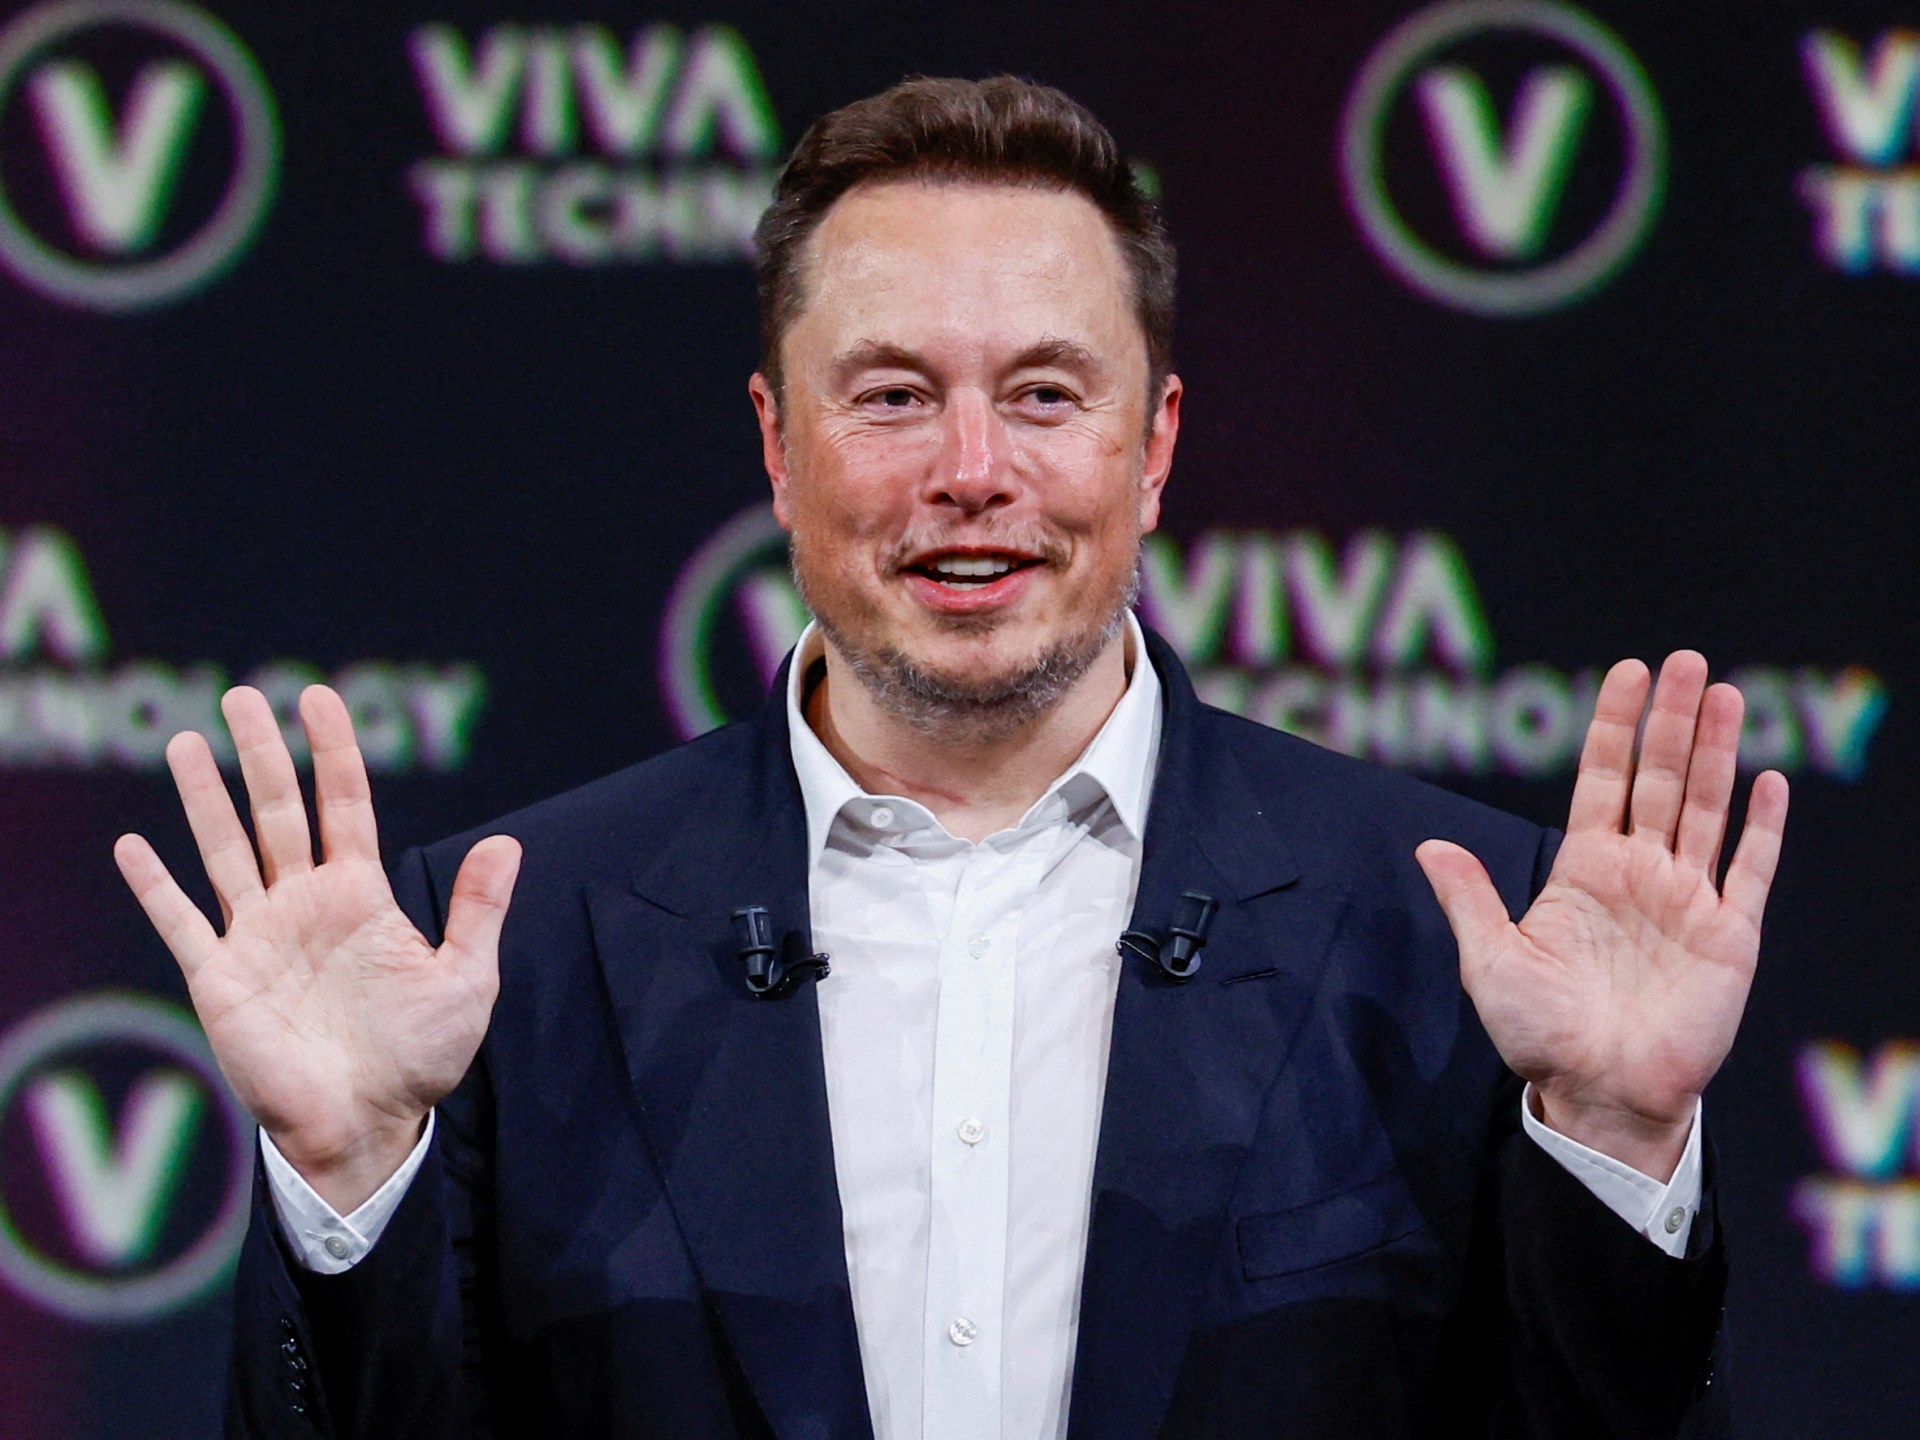 Tayvan, Çin’in yorumlarının peşinden Elon Musk’a tepki gösterdi